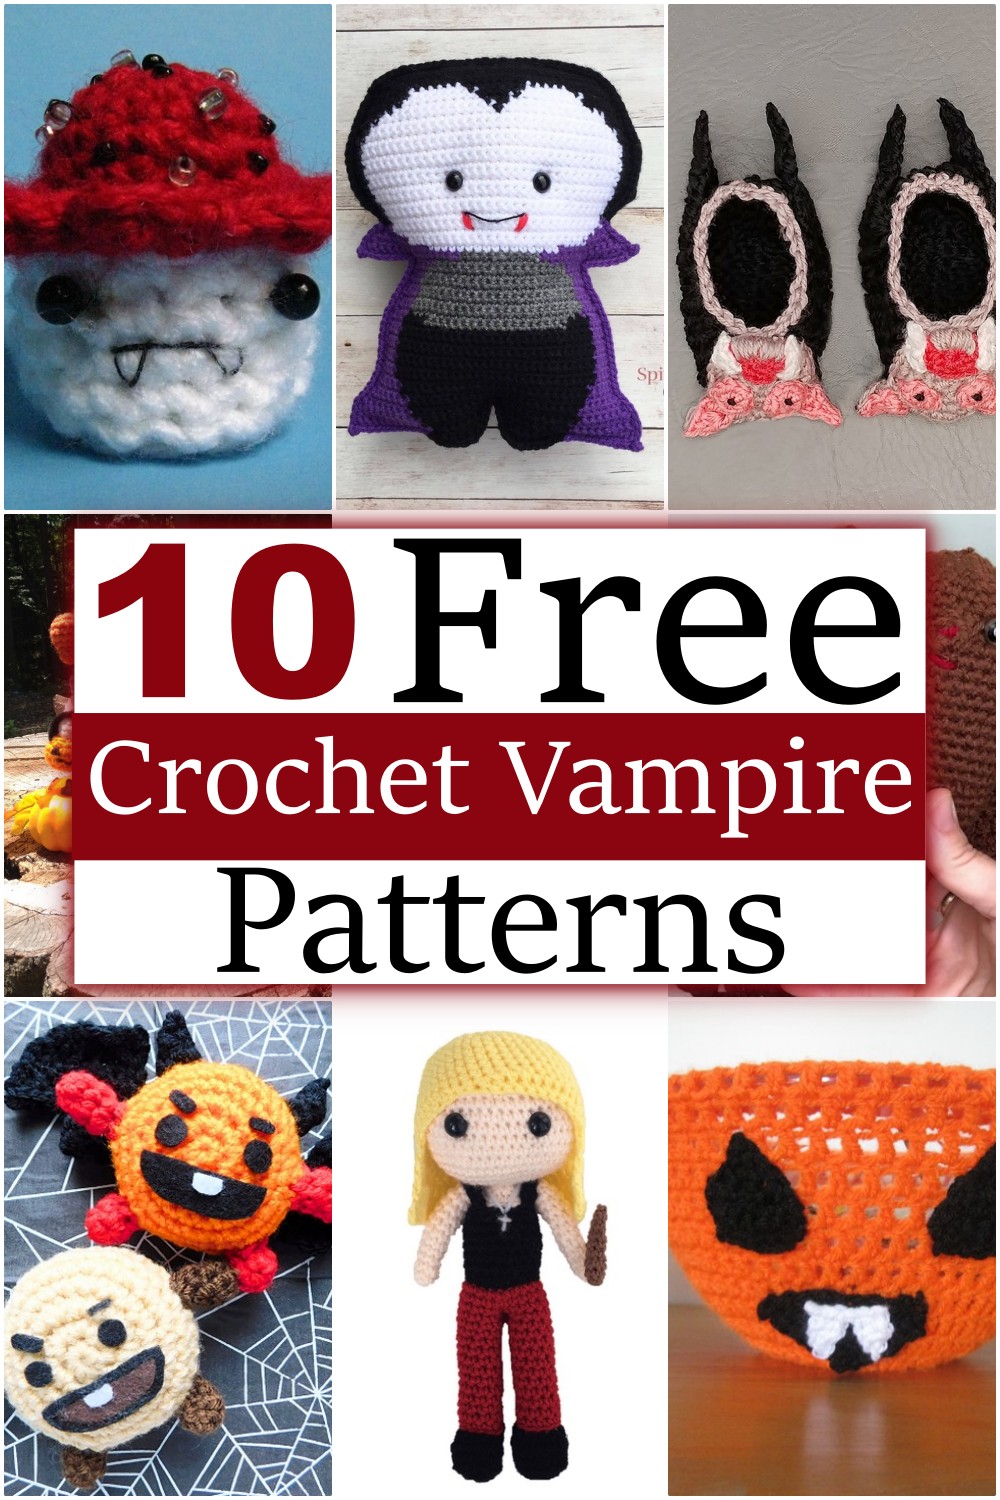 Free Crochet Vampire Patterns